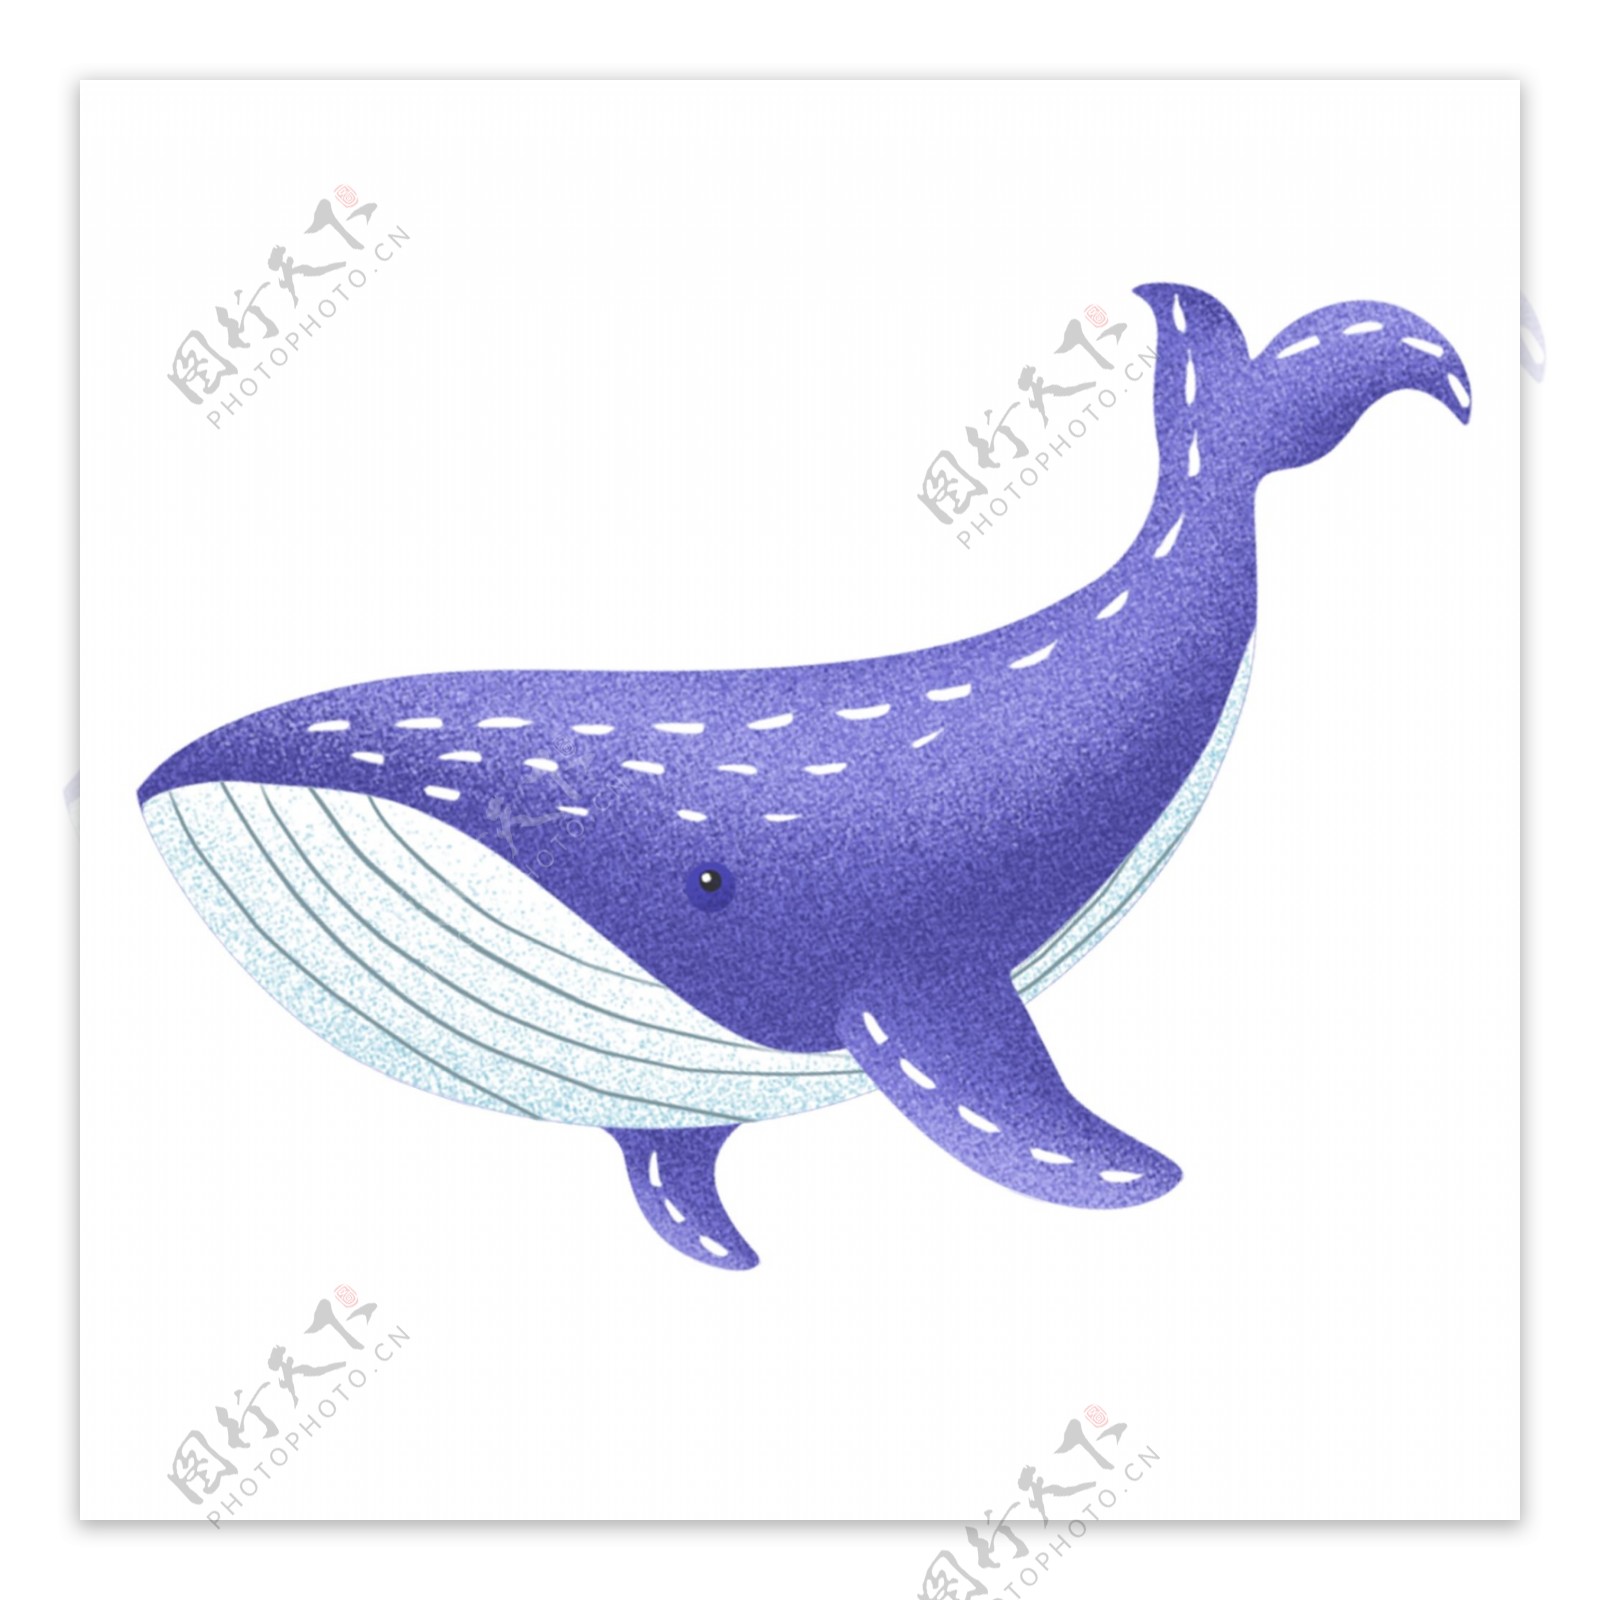 彩绘紫色海豚图案元素设计